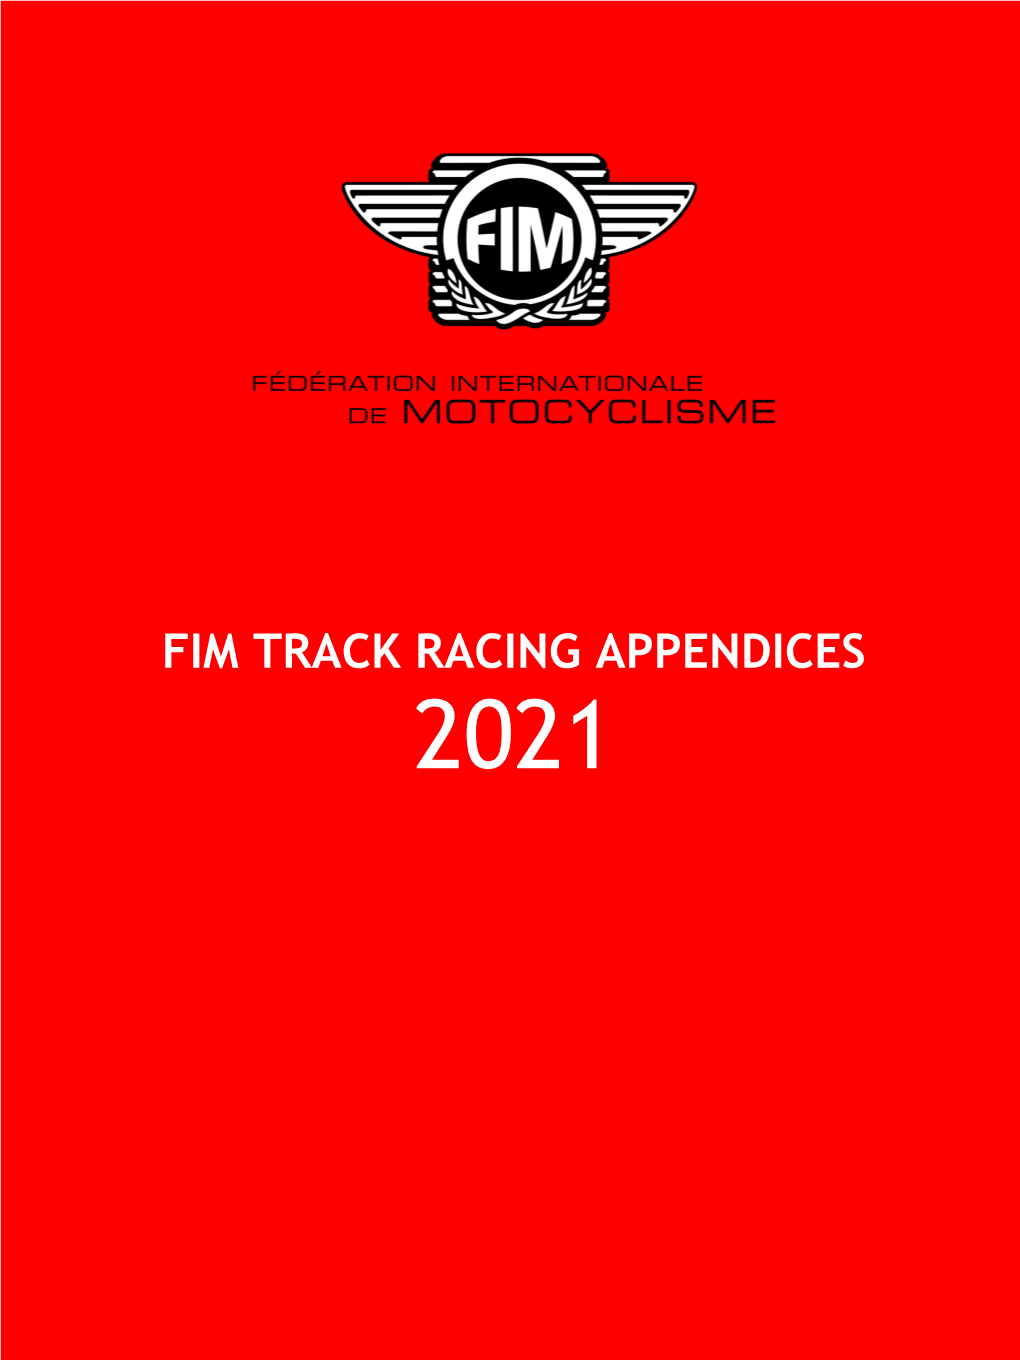 Fim Track Racing Appendices 2021